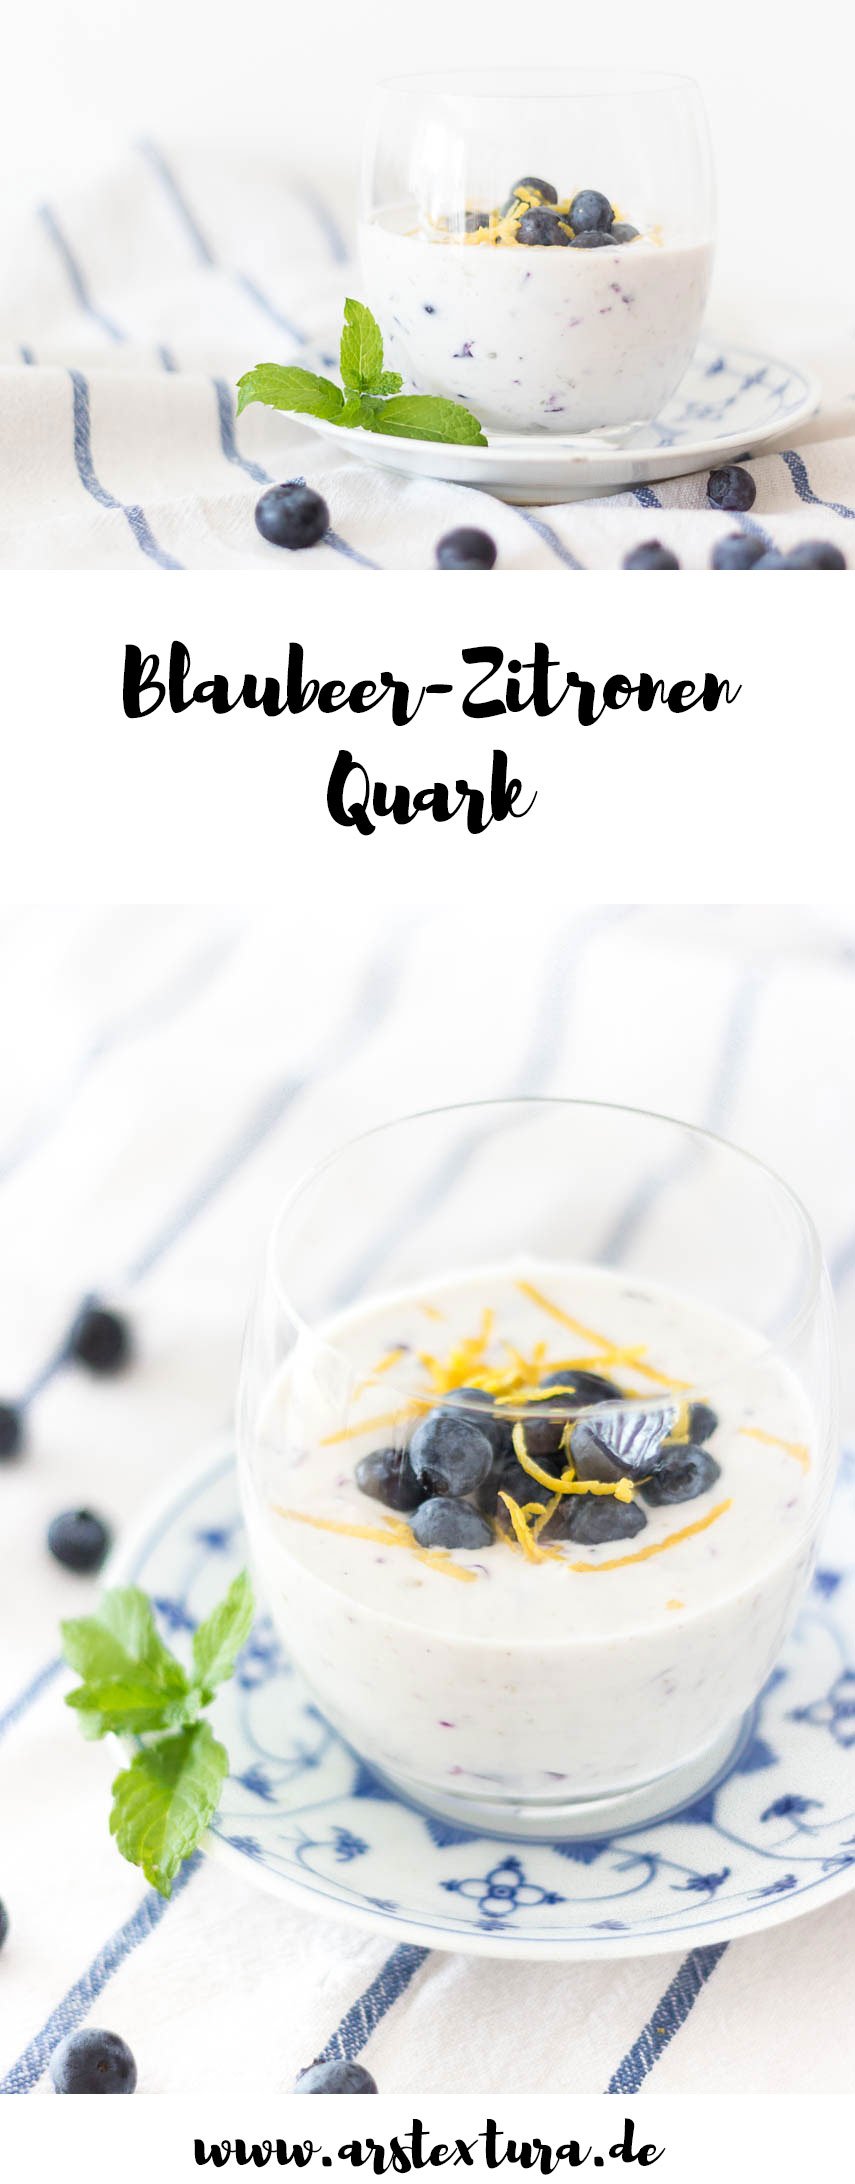 Blaubeer Rezept: Heidelbeer-Zitronen Quark - leckerer Sommernachtisch